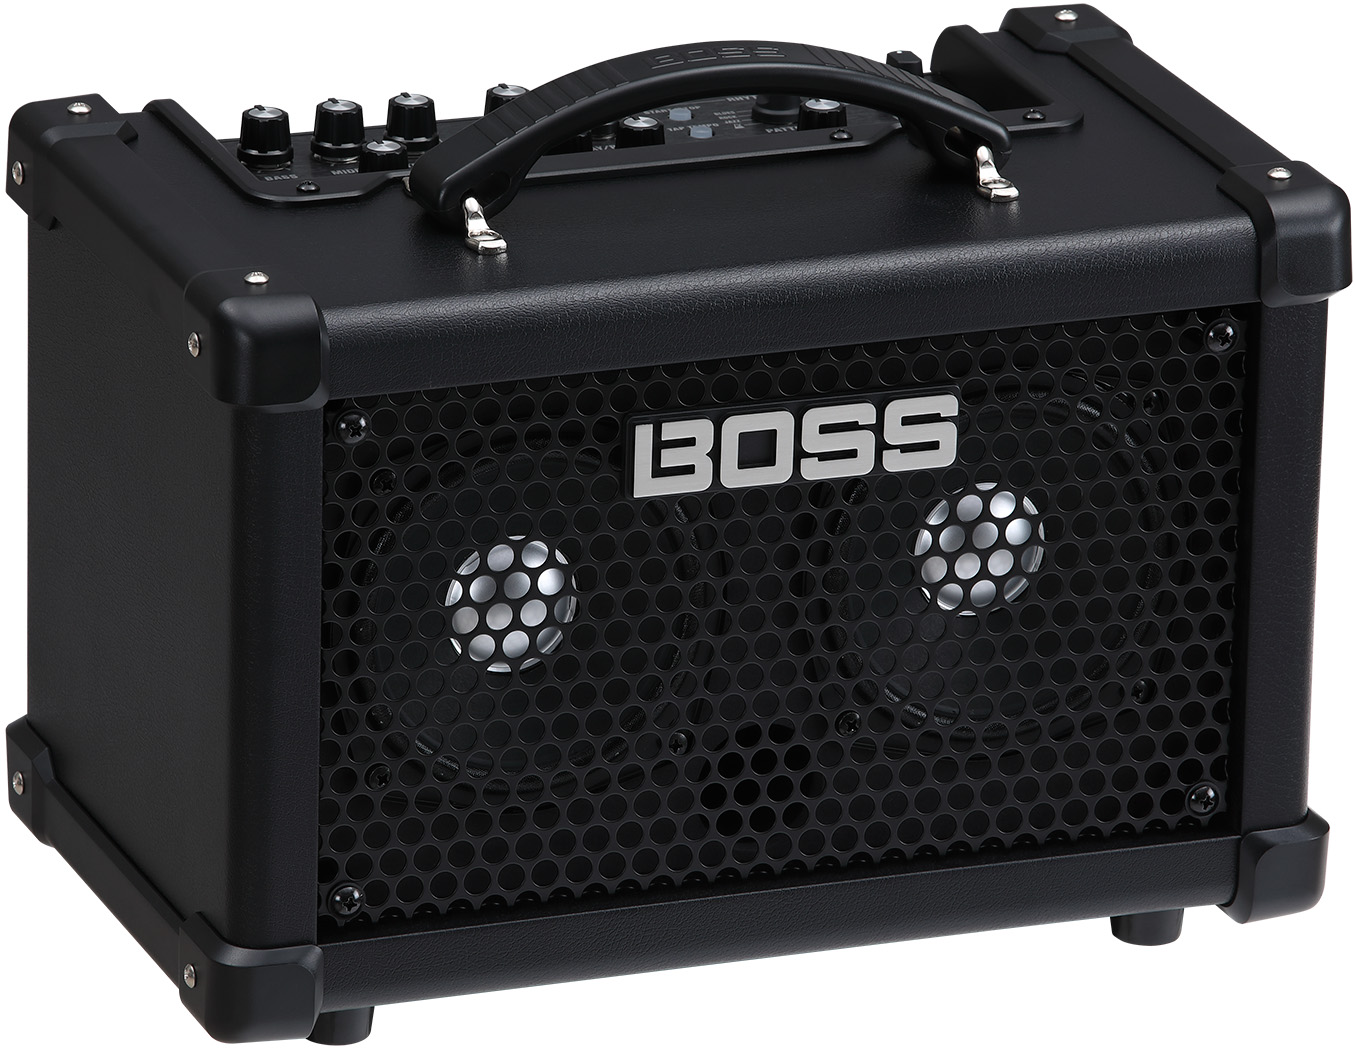 Boss Dual Cube Bass LX Bassverstärker